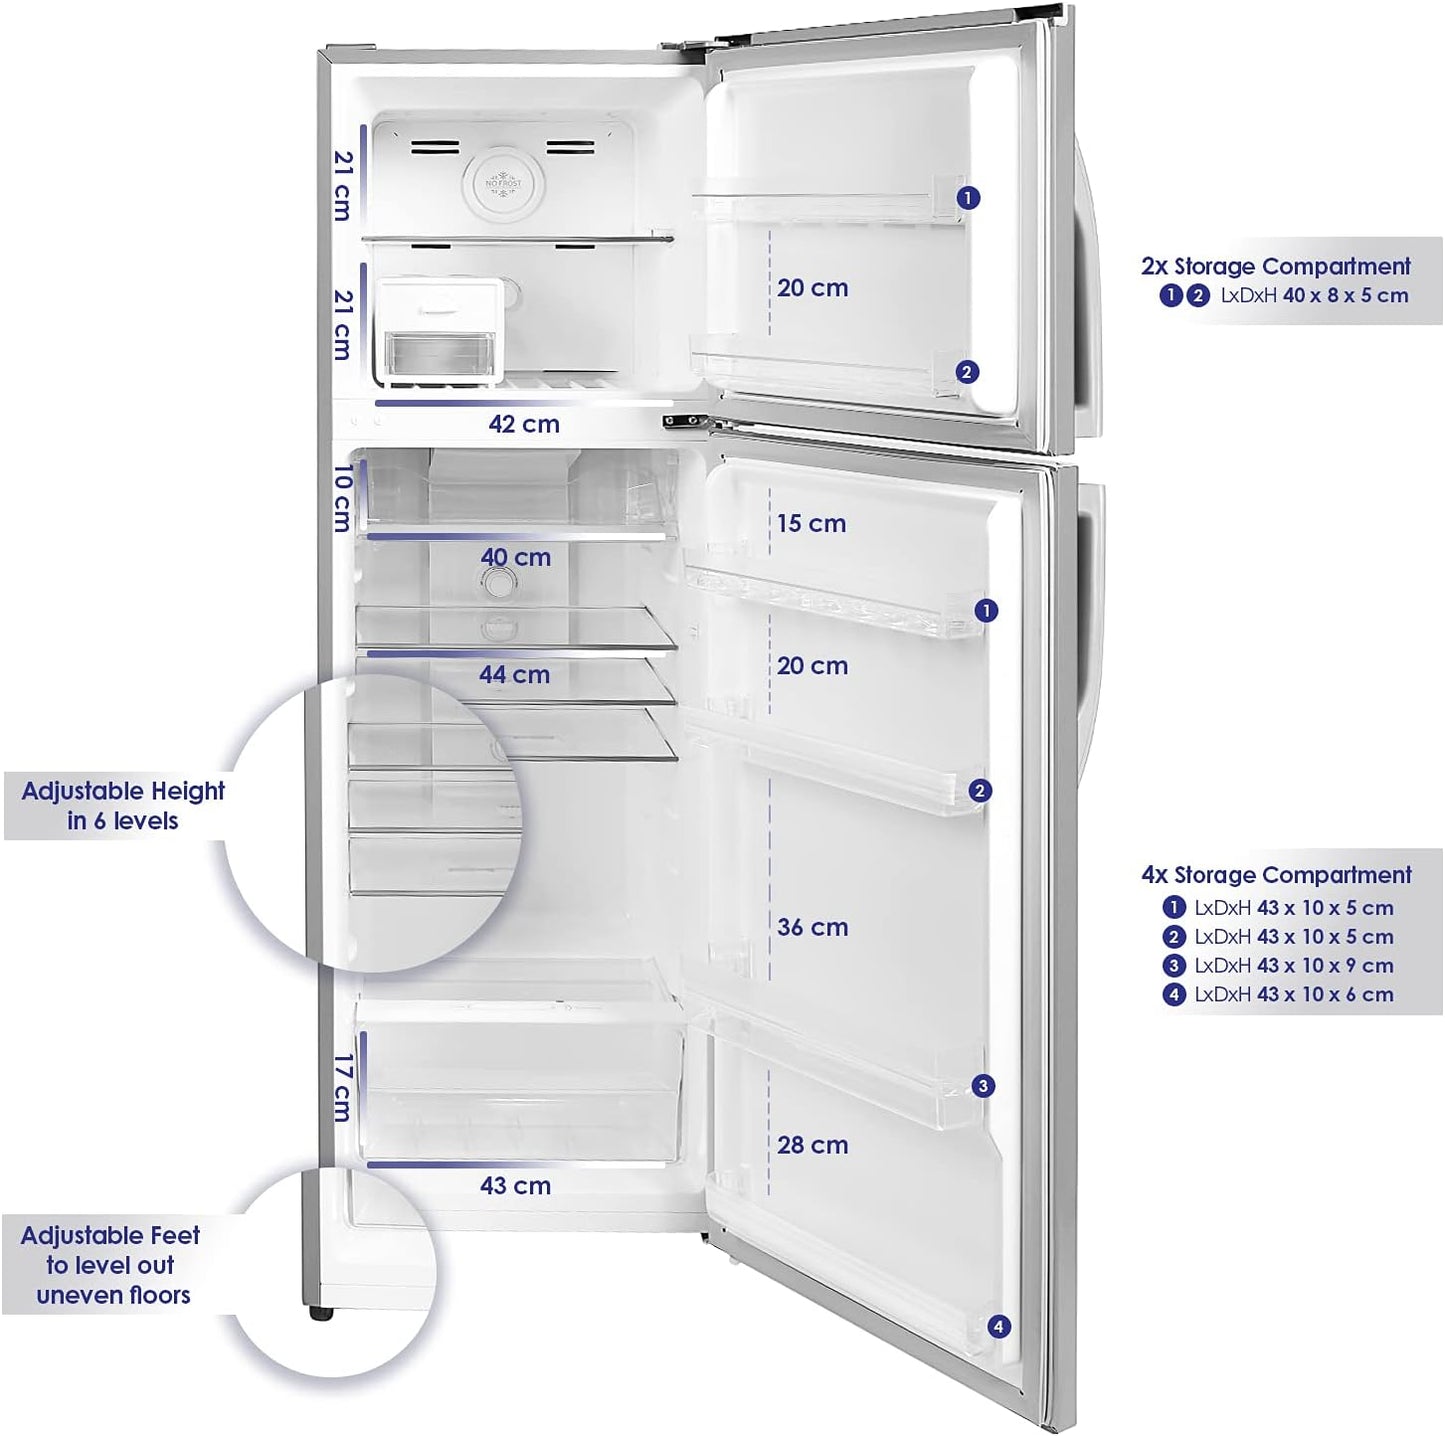 Super General 360L Double Door Refrigerator